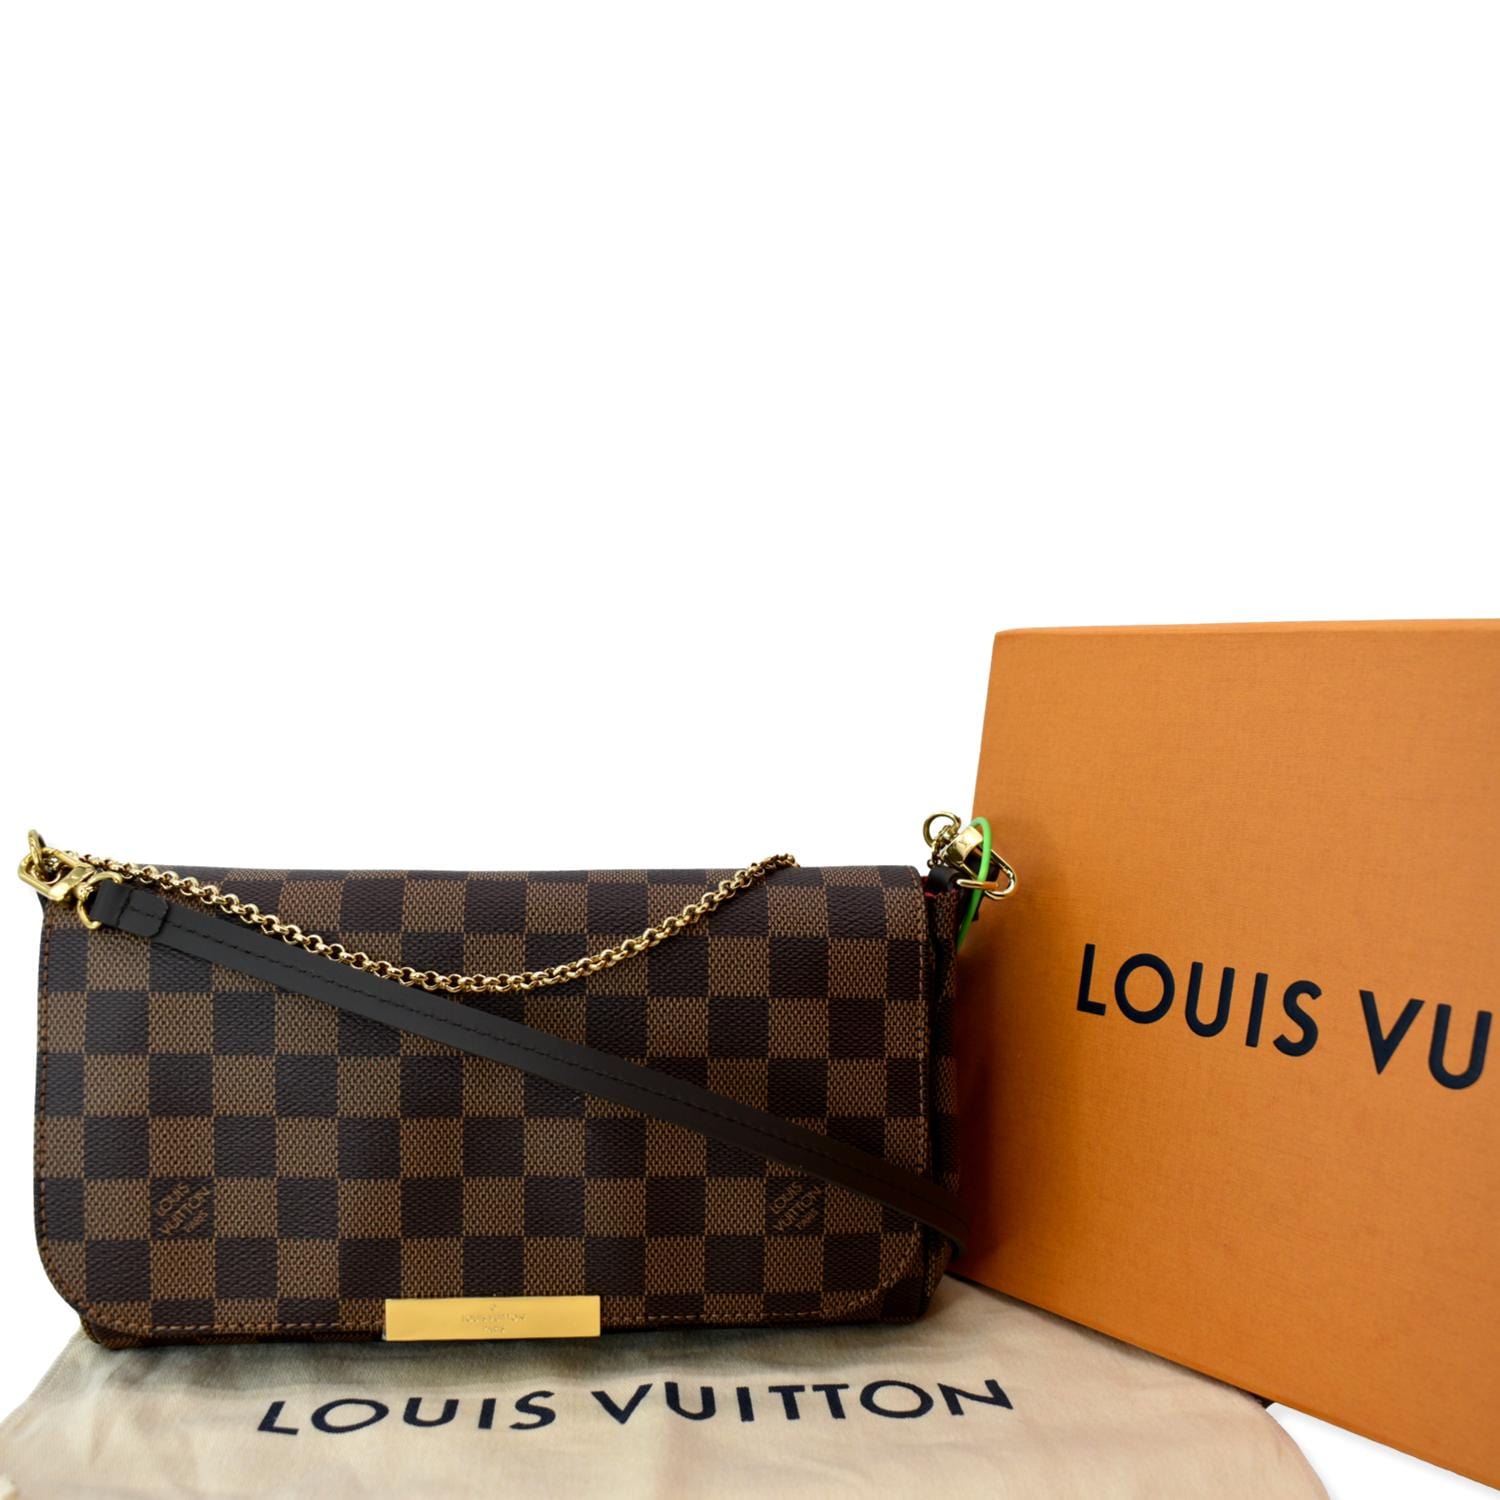 Louis Vuitton, Canvas Damier Ebene Favorite